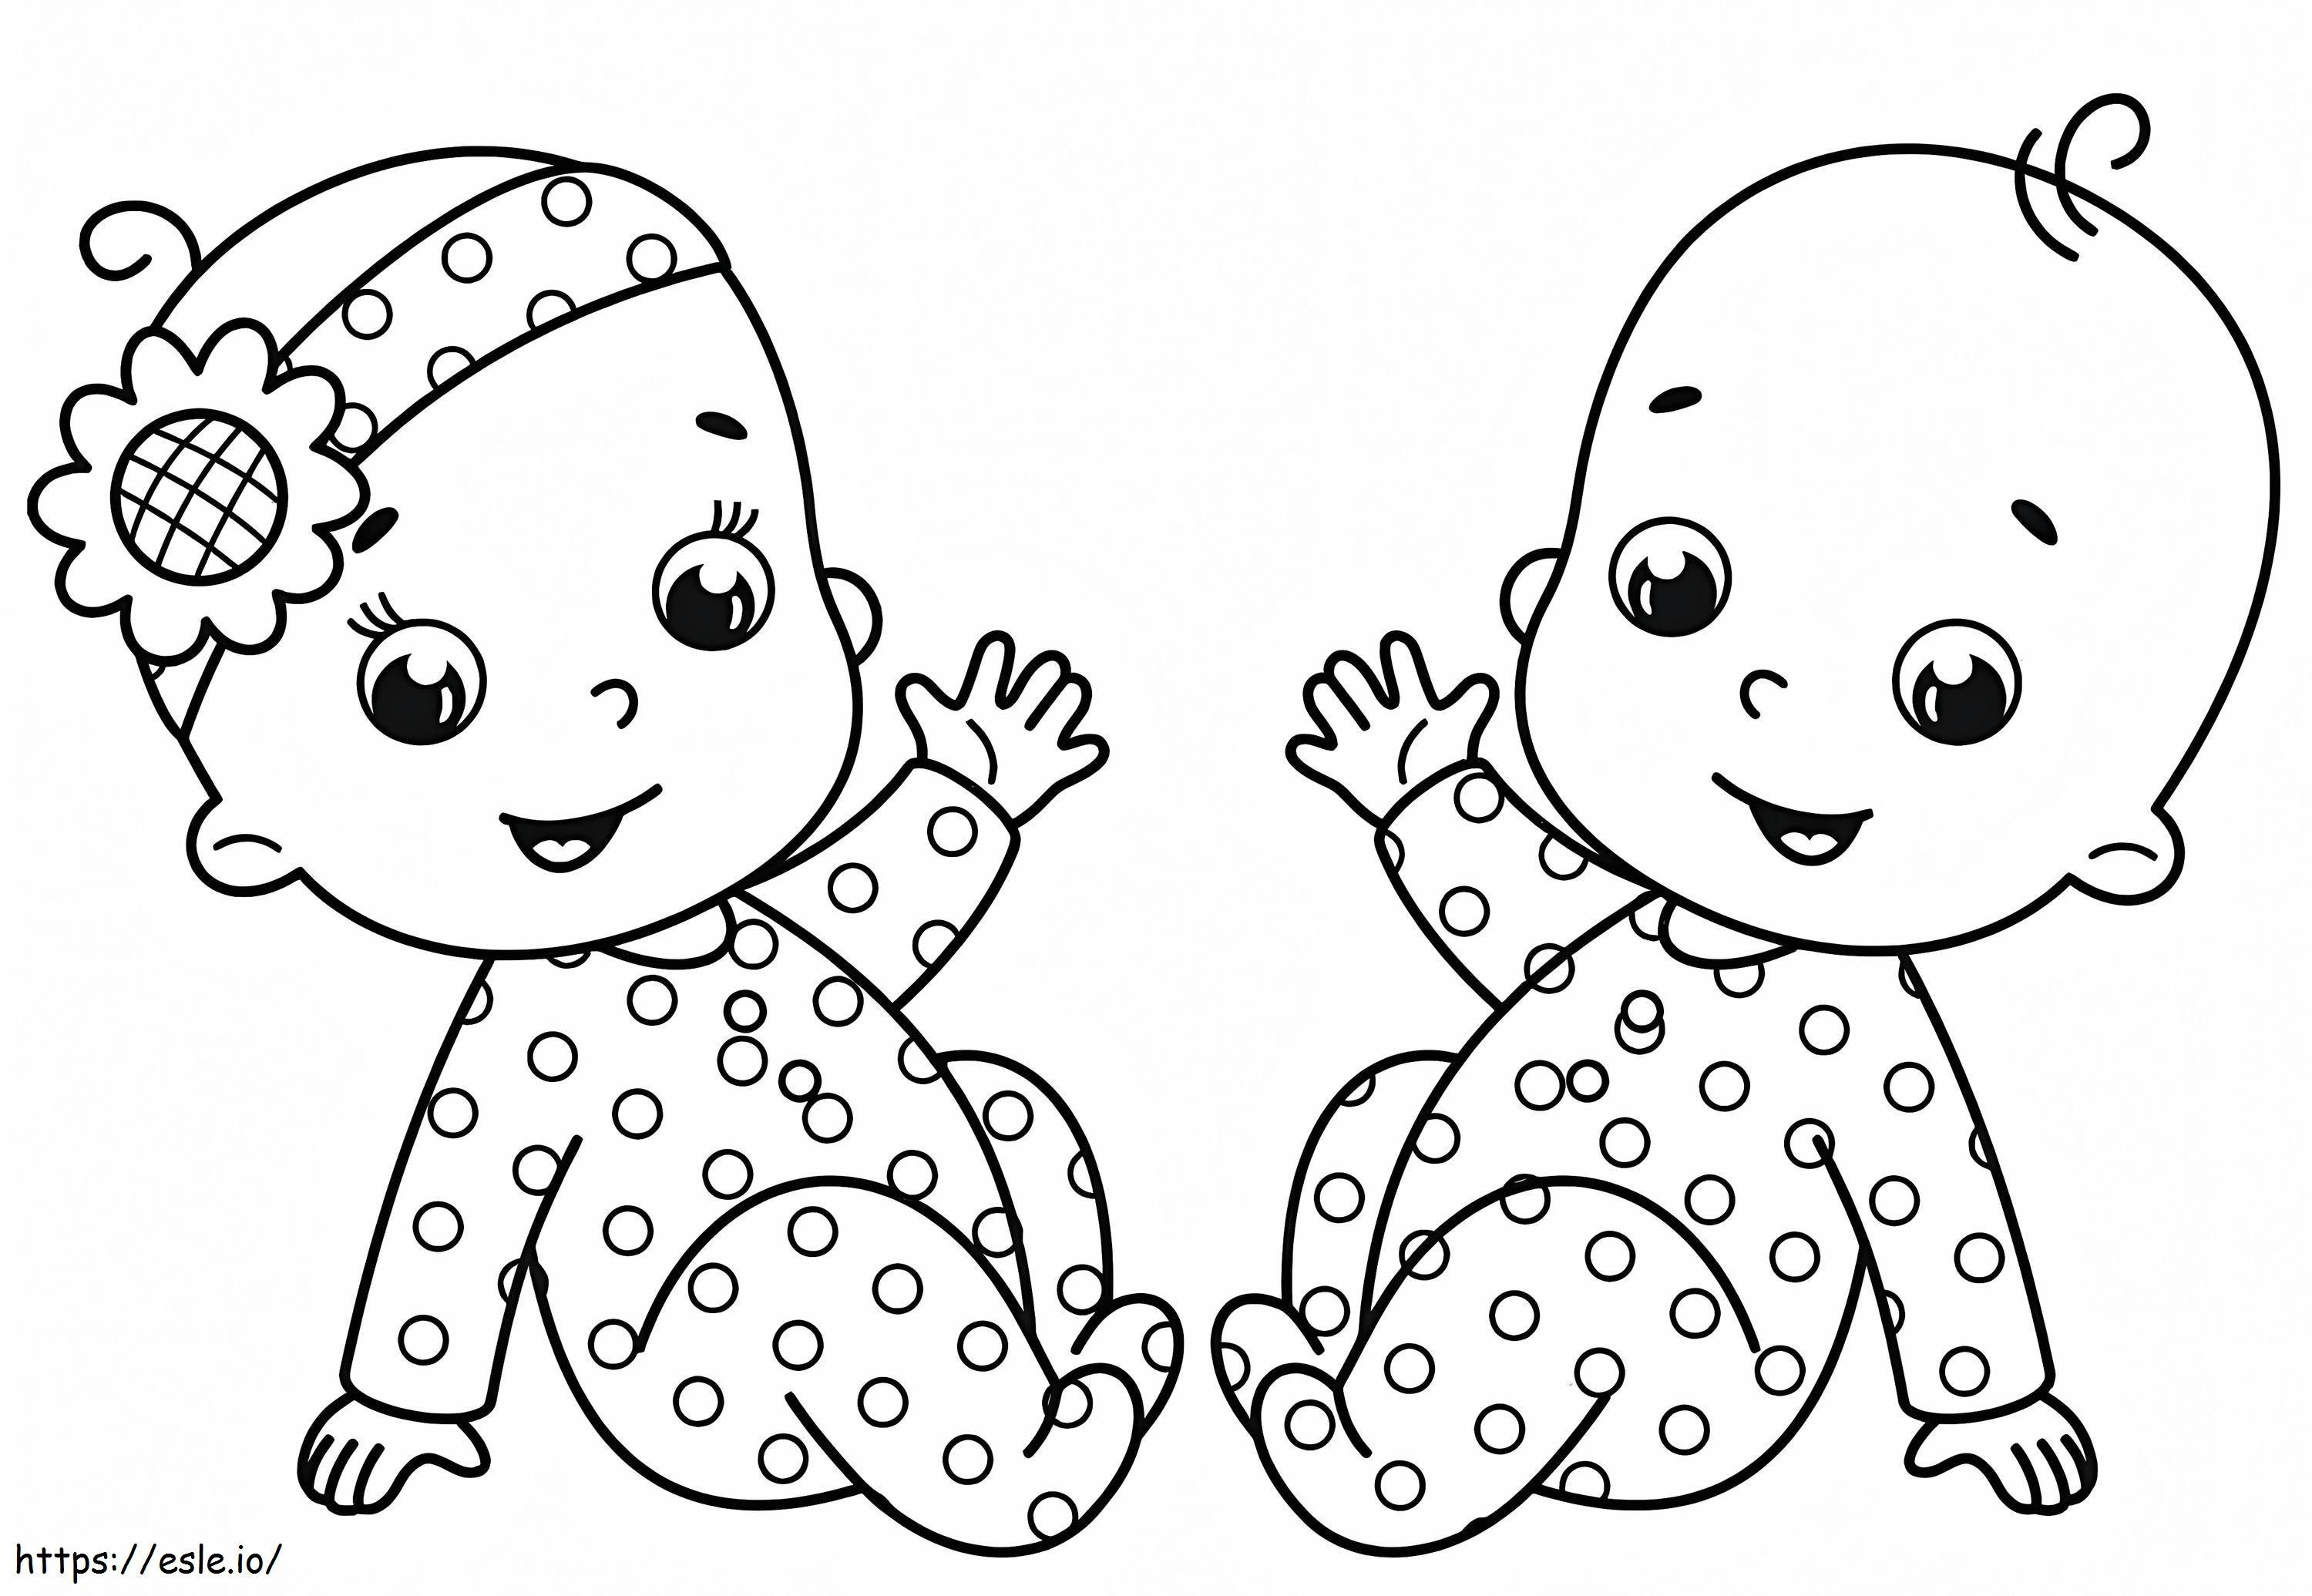 Zwei Babys ausmalbilder